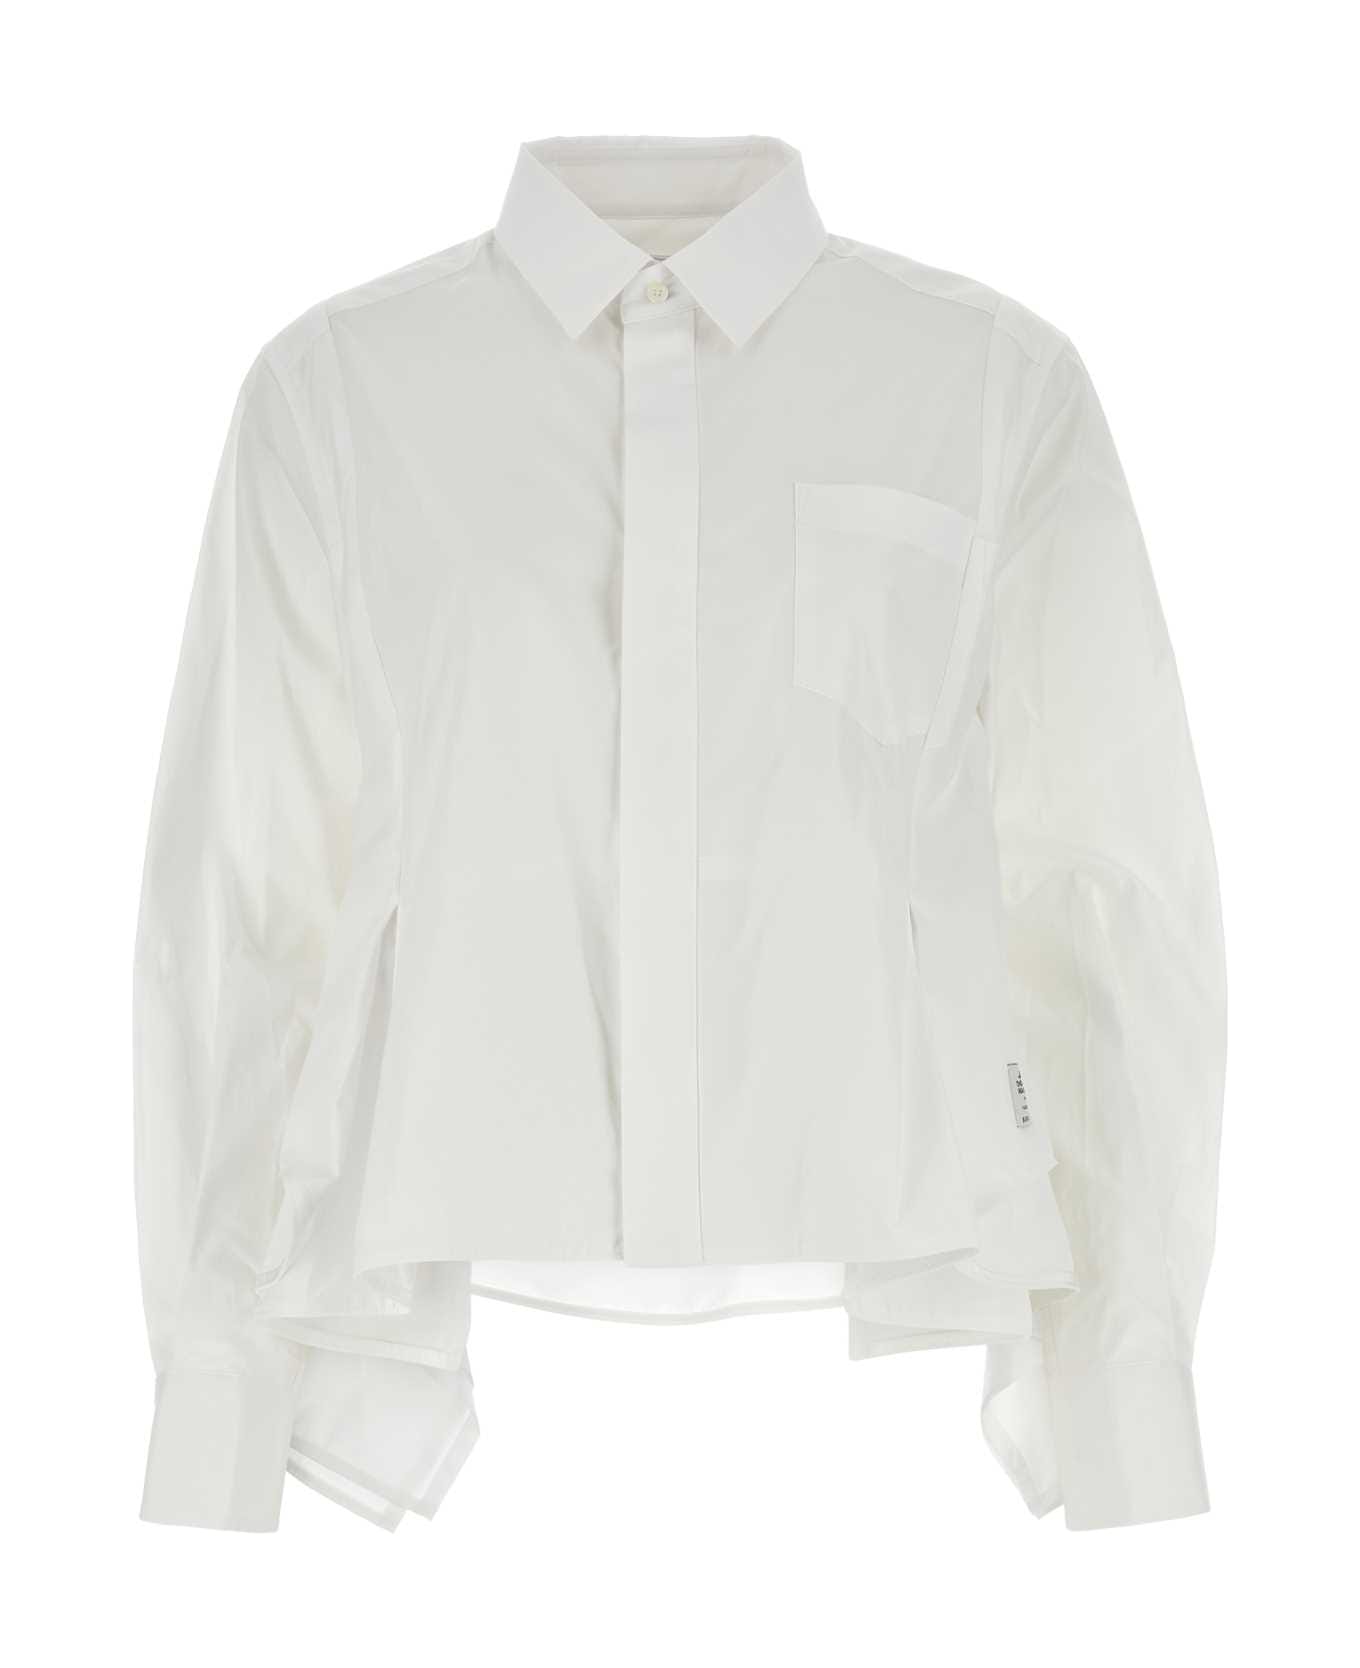 Sacai White Cotton Shirt - OFFWHITE